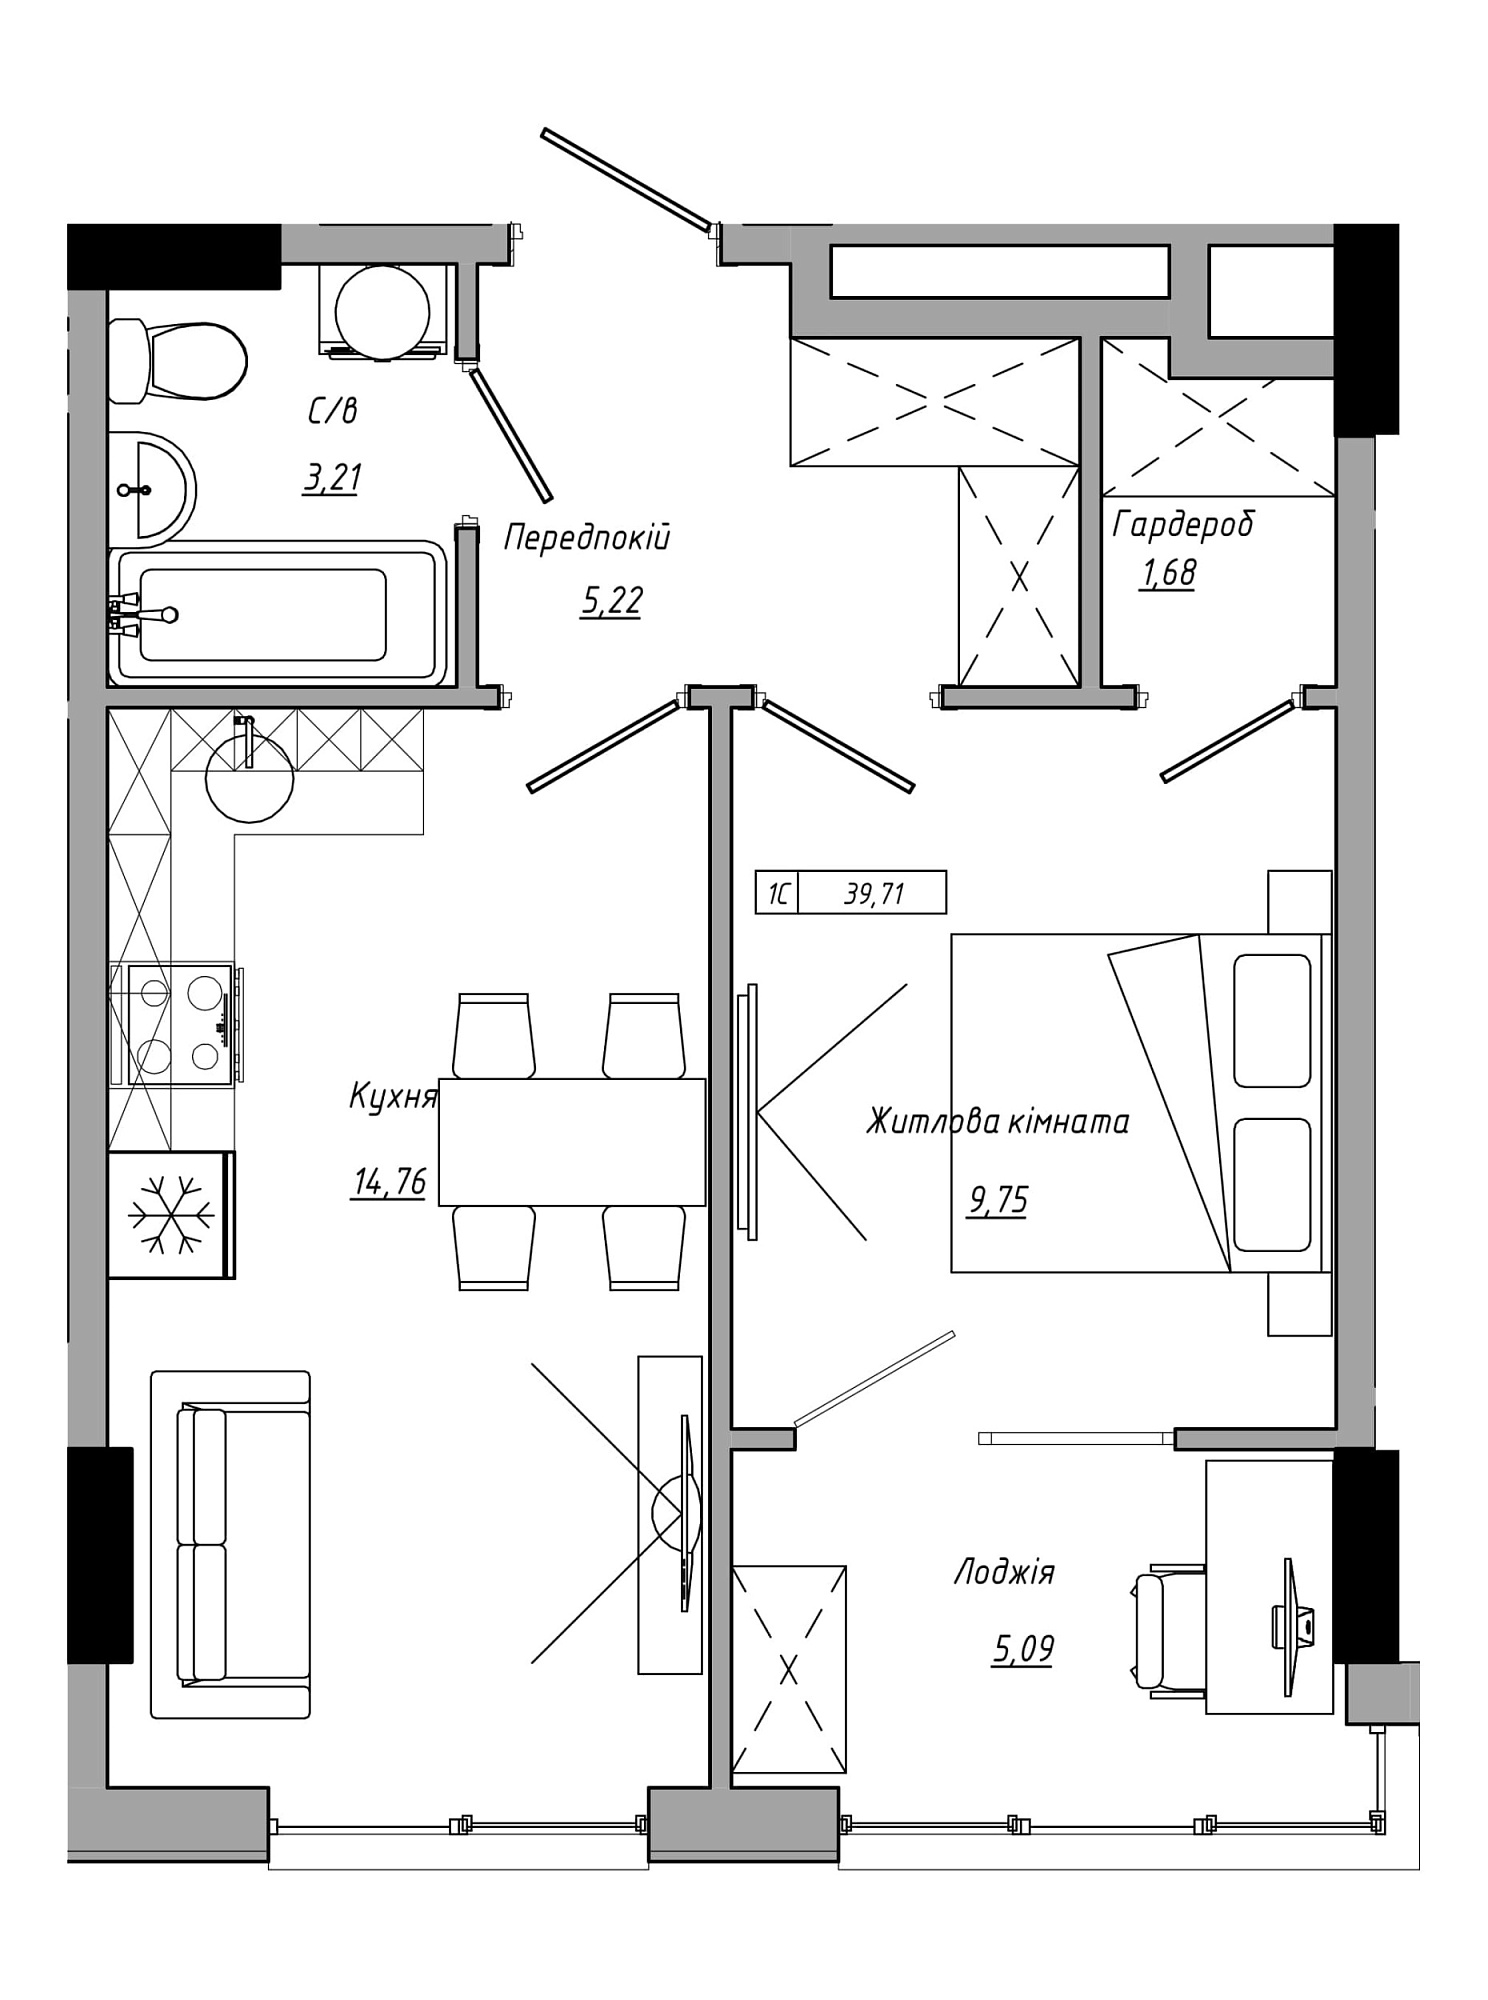 Планування 1-к квартира площею 39.71м2, AB-21-13/00121.